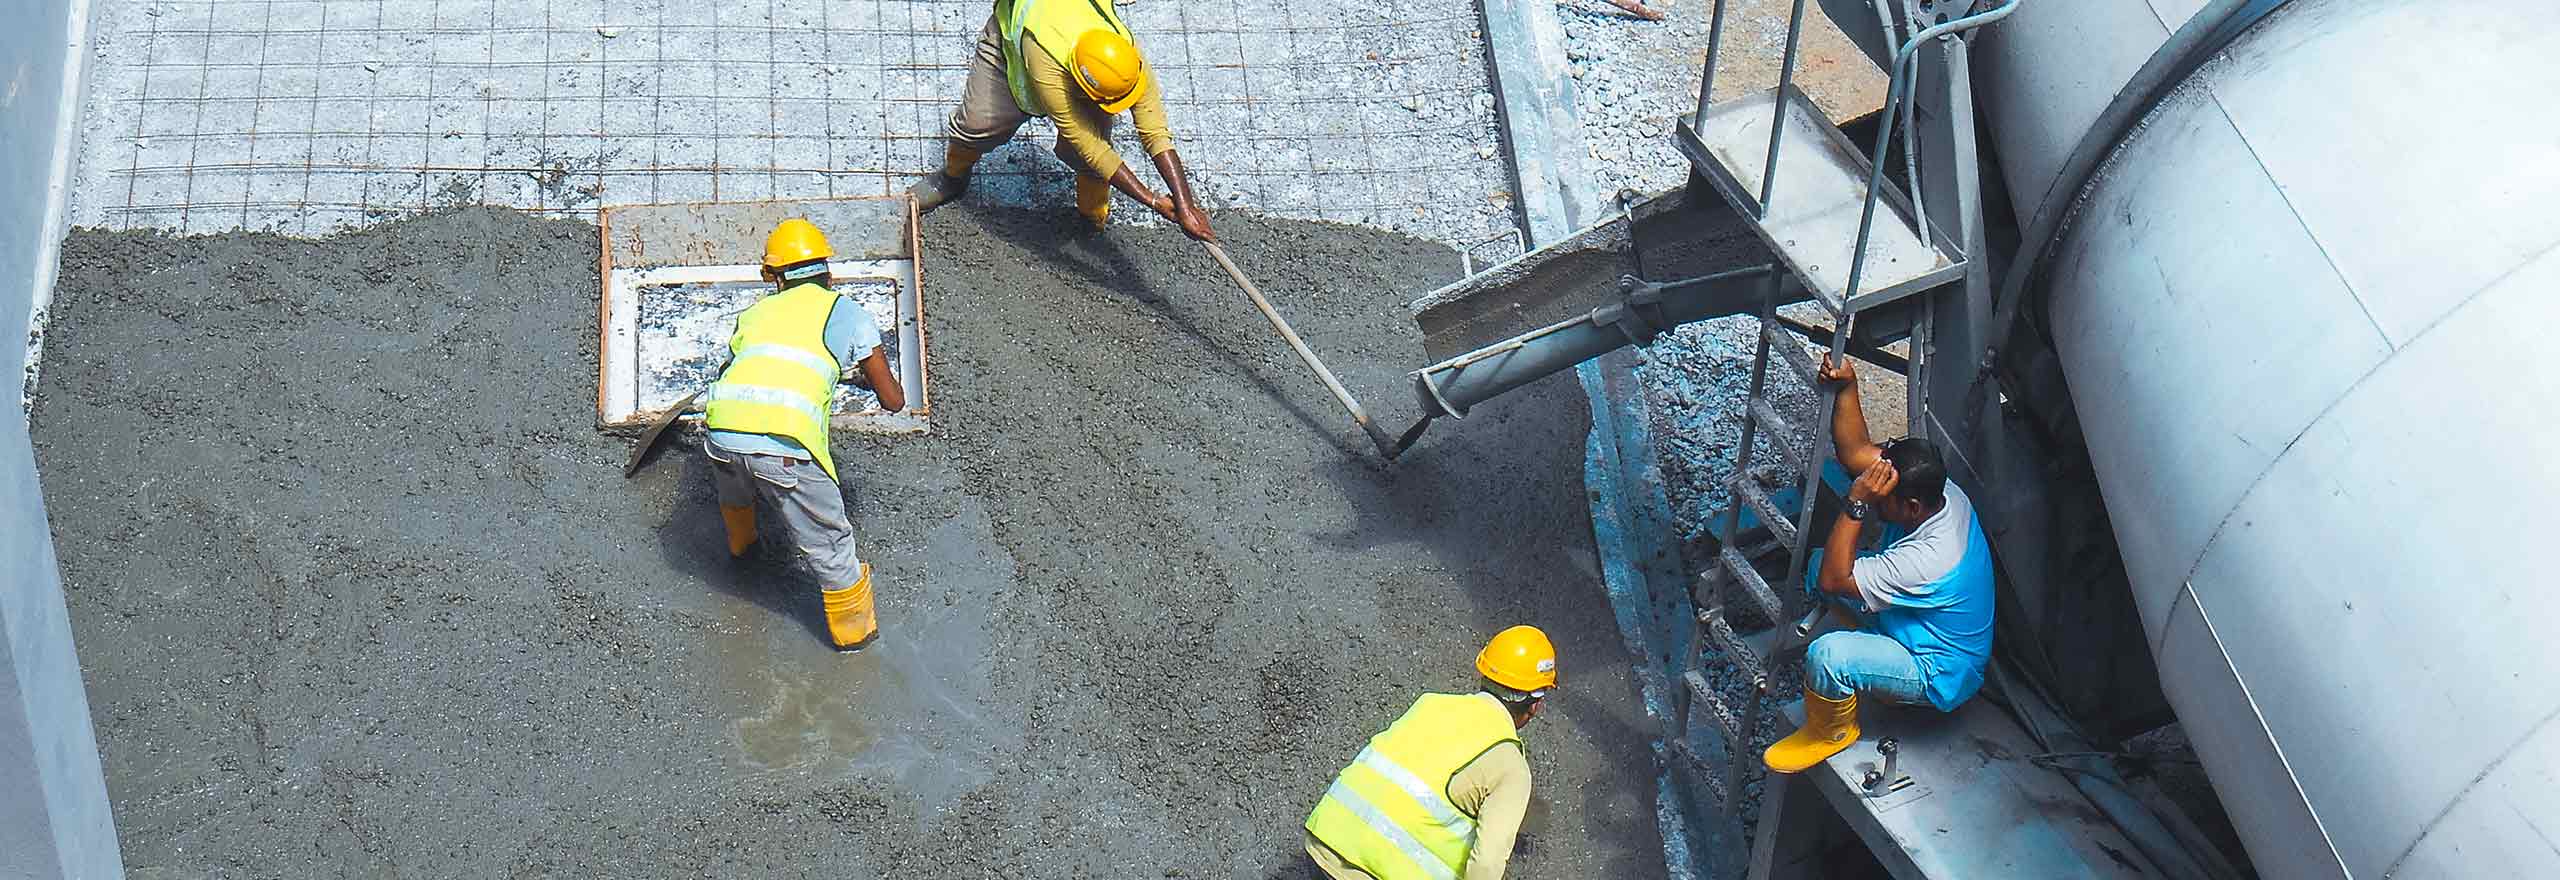 Bauarbeiter verwenden eine Vielzahl von Geräten zum Gießen und Glätten eines Betonplattenabschnitts.